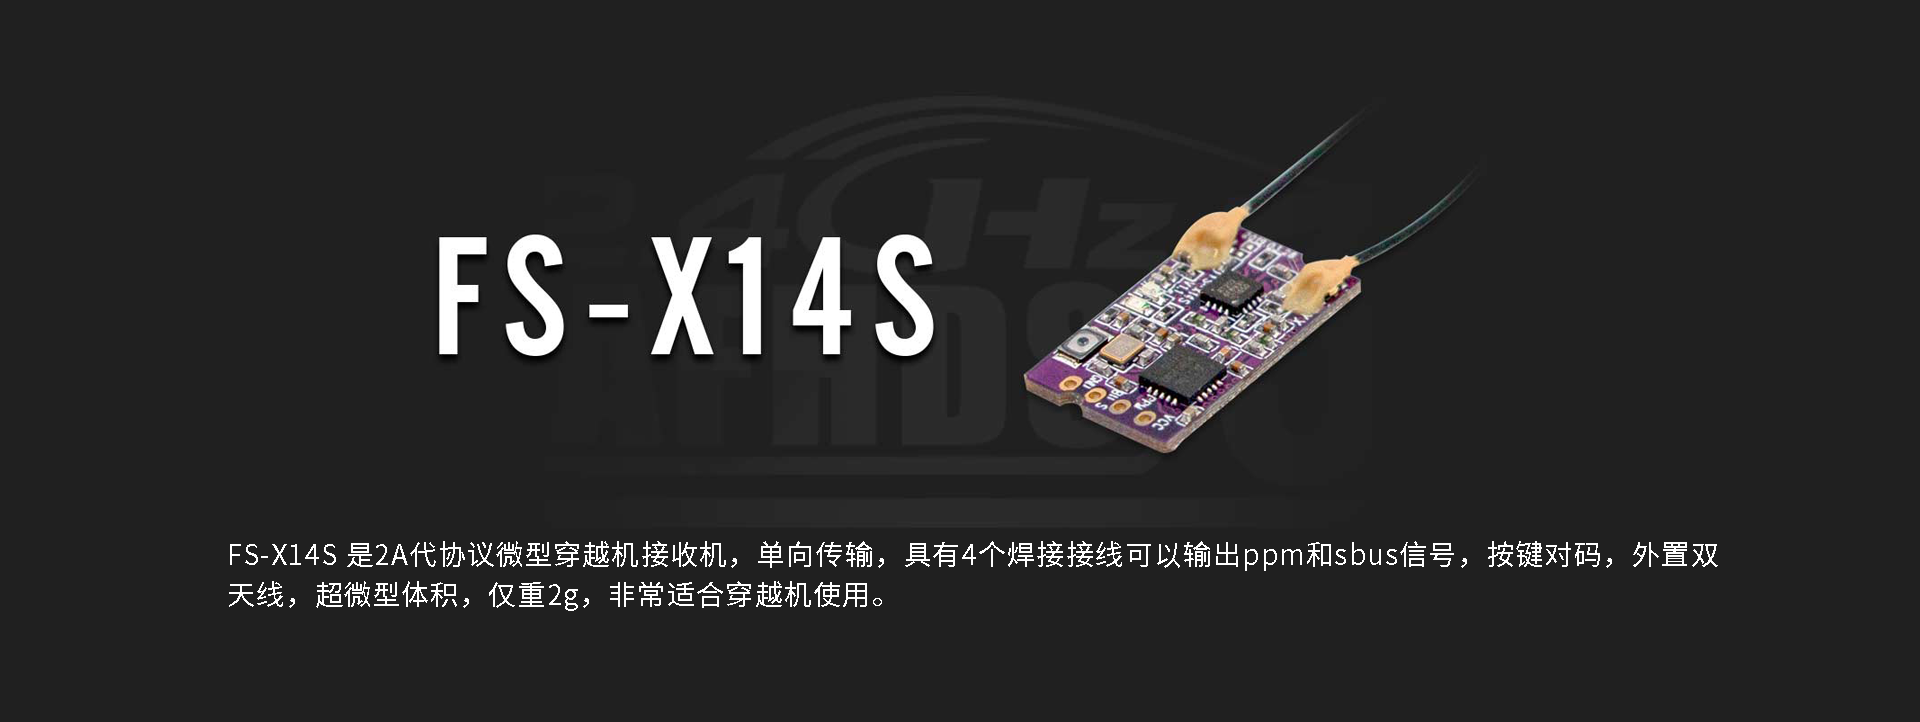 FS-X14S